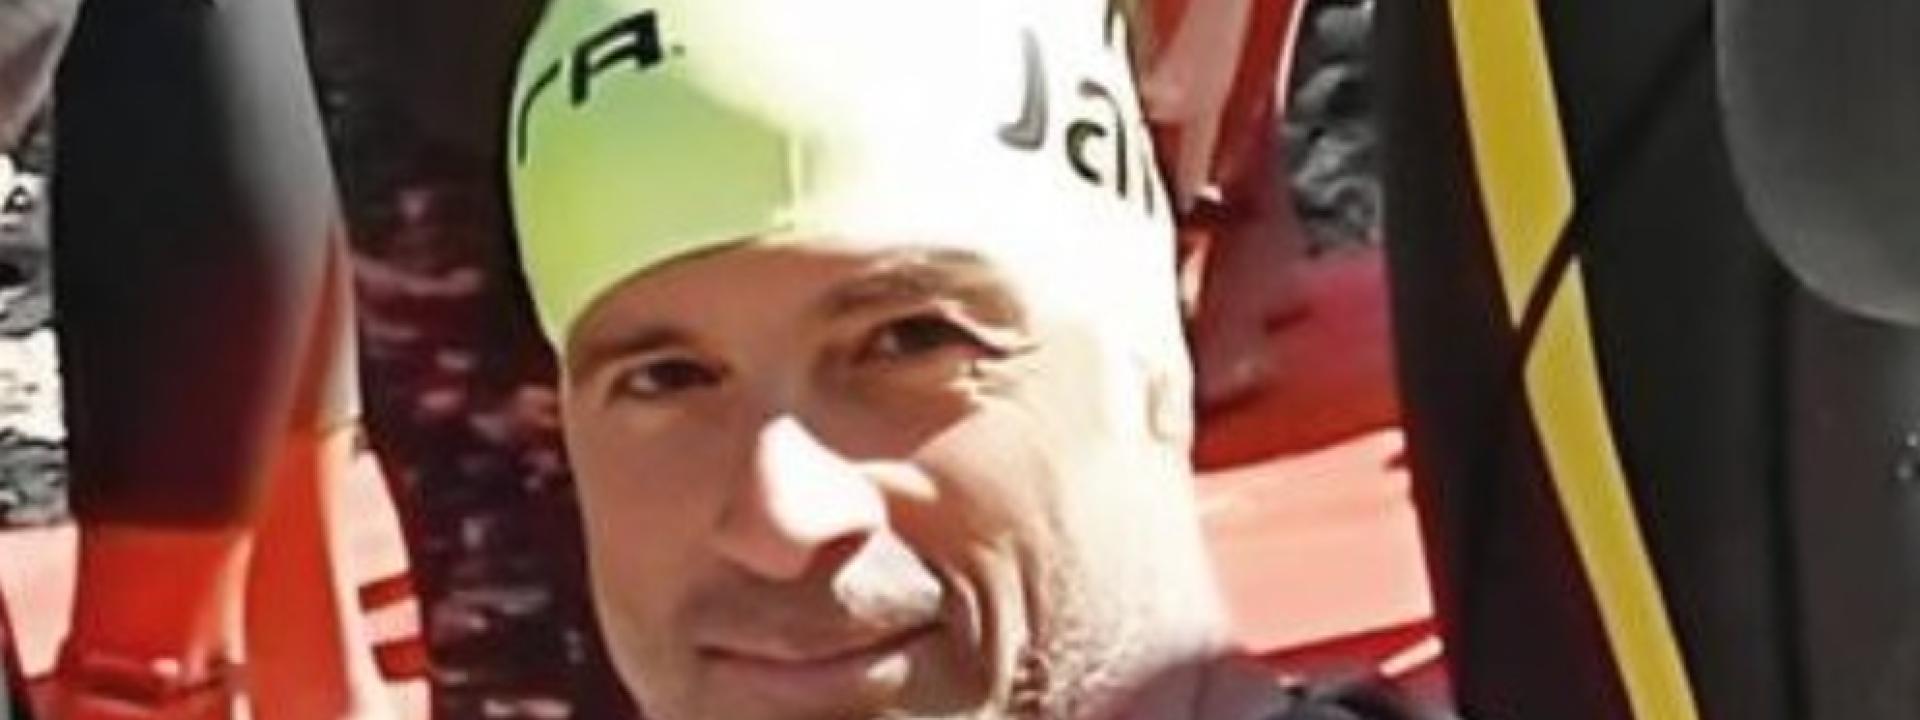 Marche - Malore mentre fa jogging: muore 58enne padre di tre figli